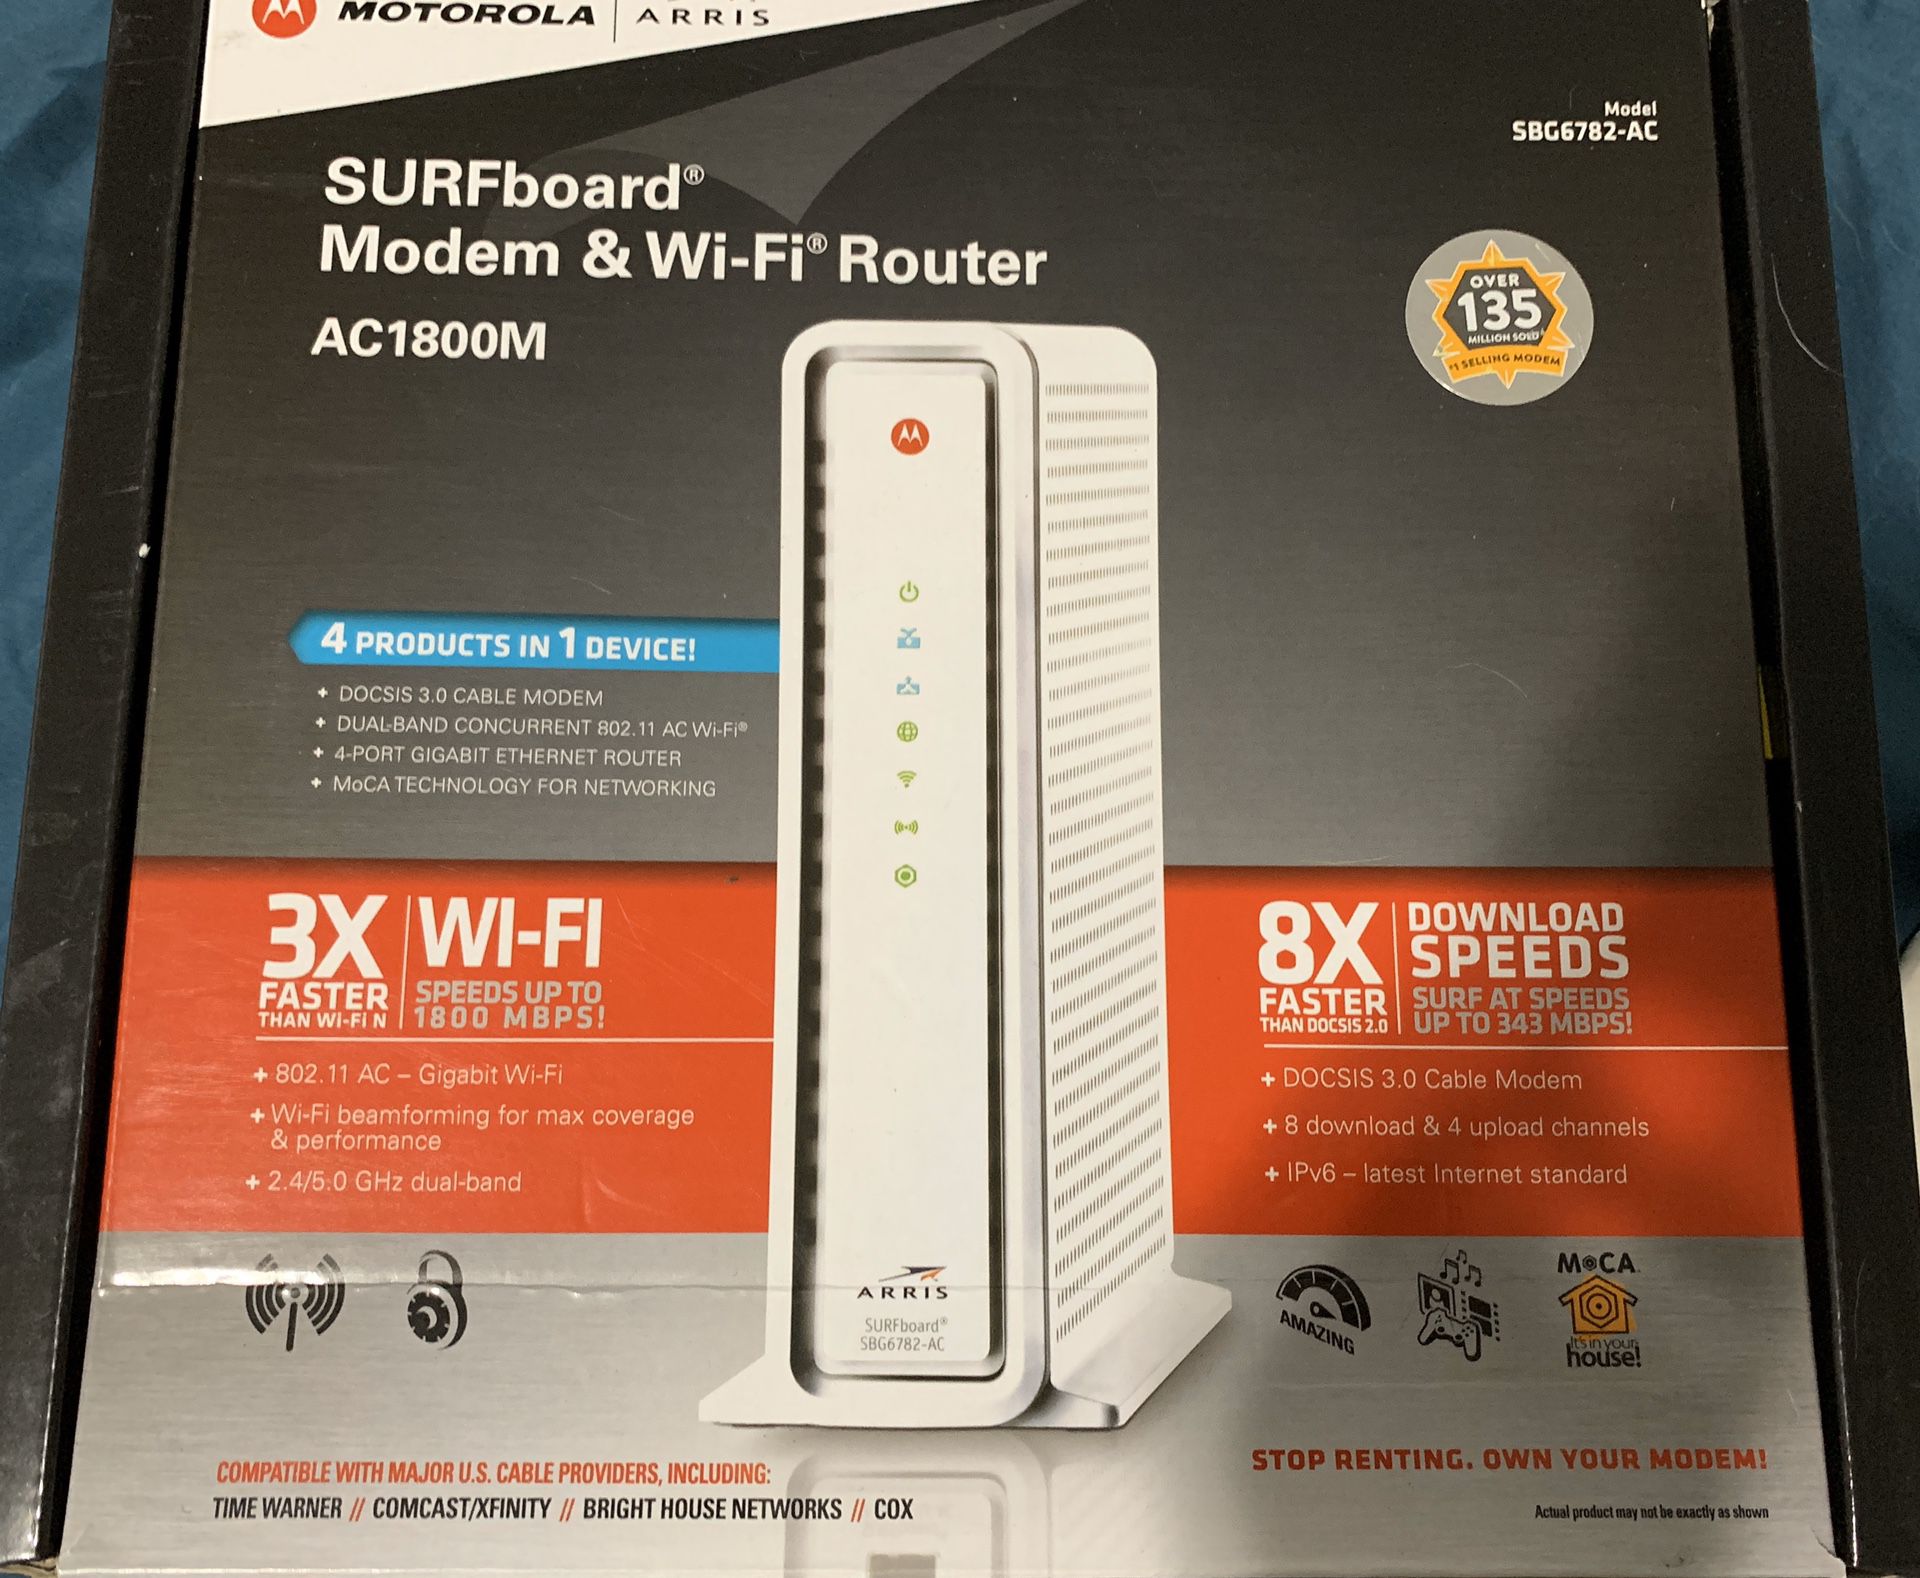 Modem & WiFi router— Motorola Surfboard Arris, gigabyte WiFi/internet